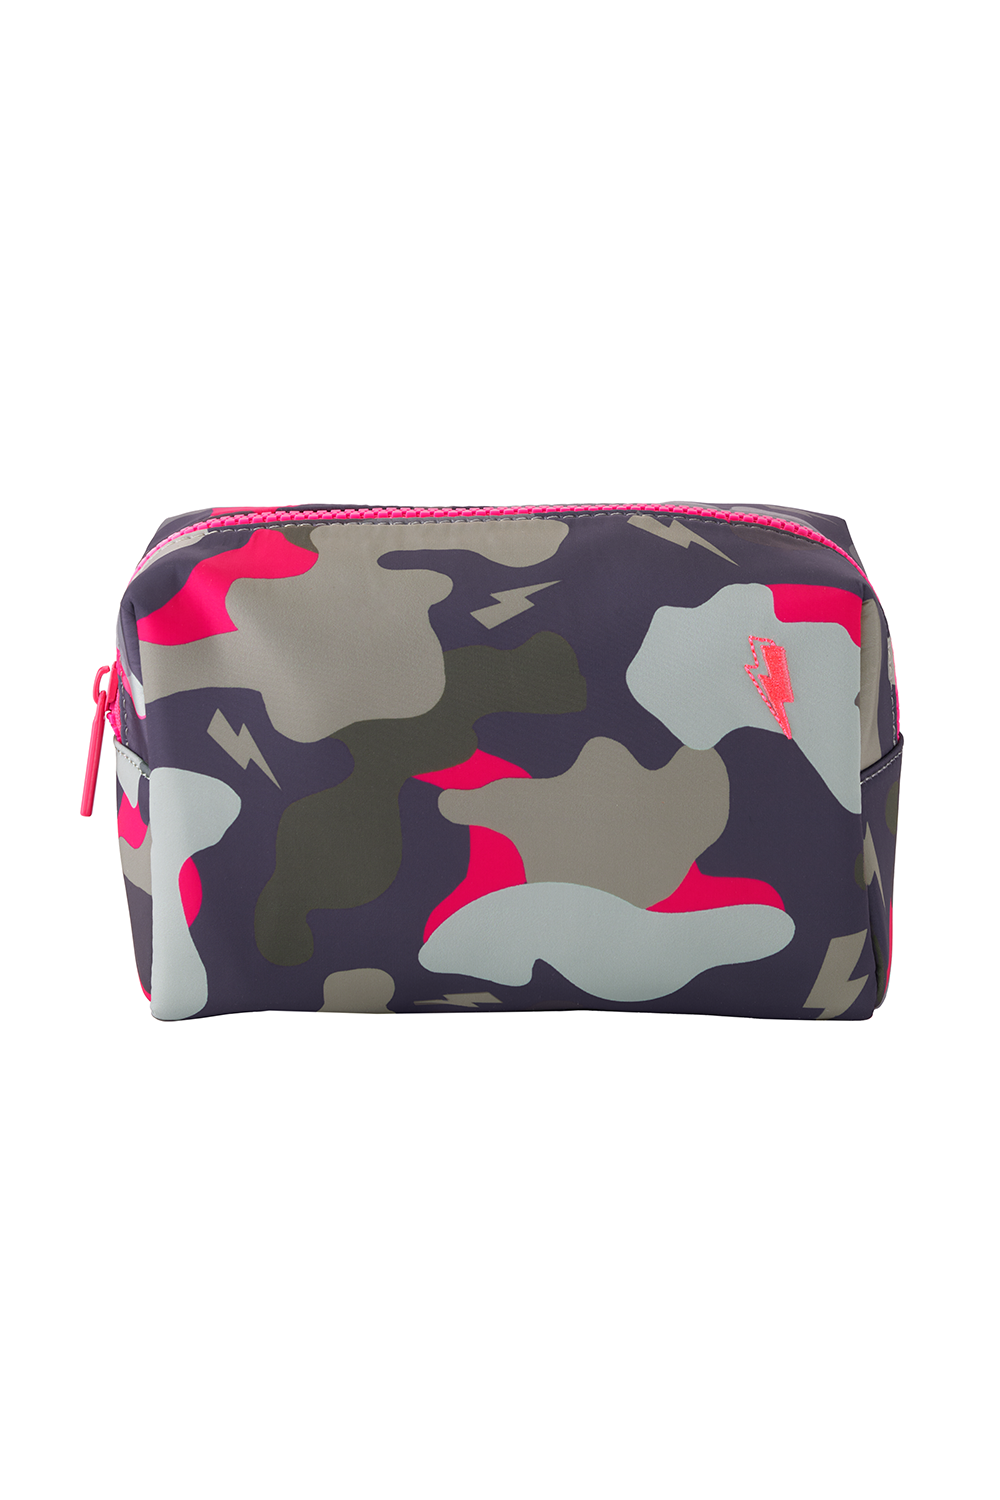 Scamp & Dude x Caroline Hirons Khaki with Pink Camo Makeup Bag